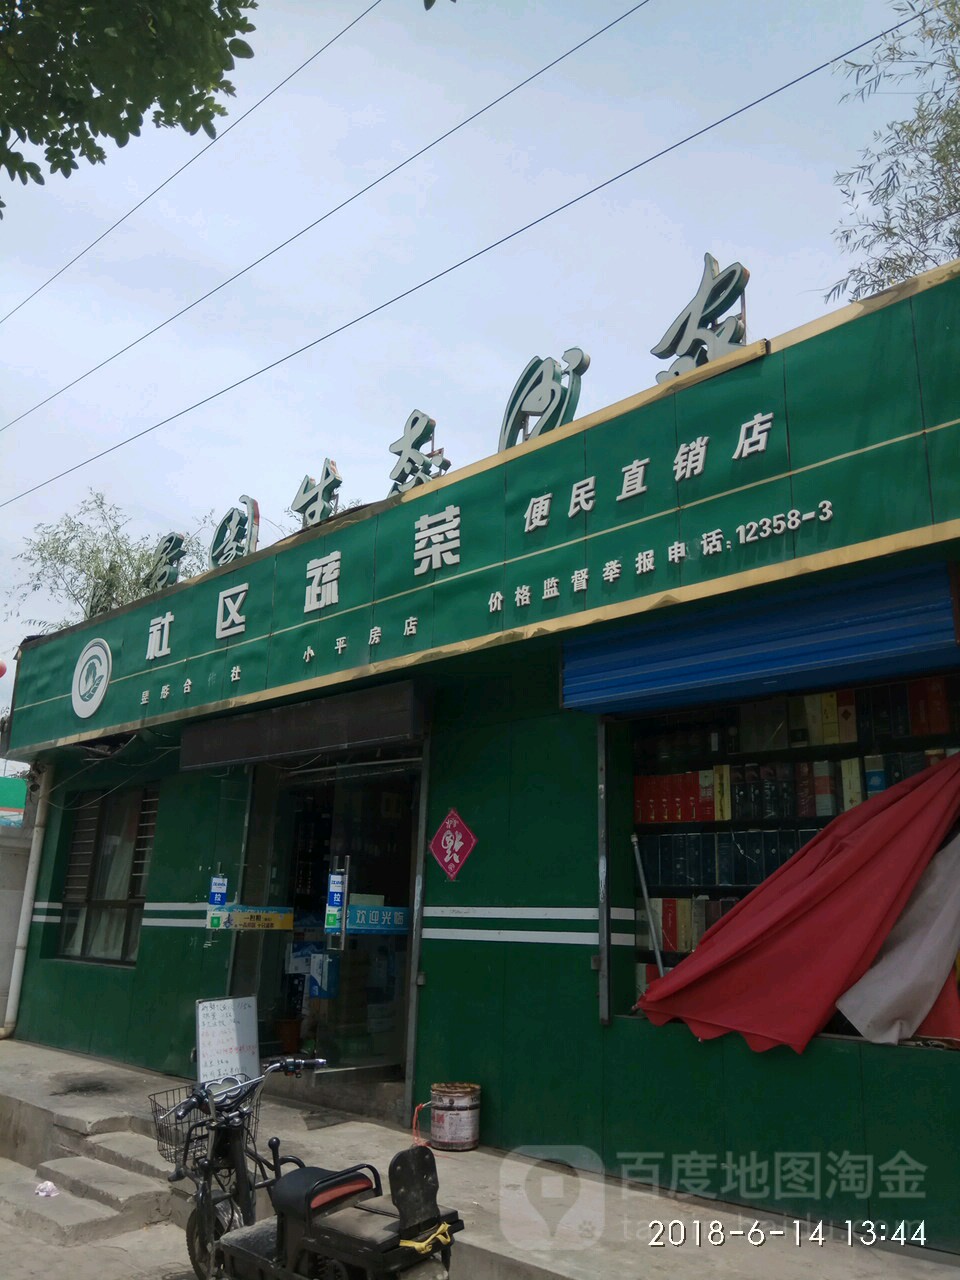 社區蔬菜便民直銷店(小平房店)